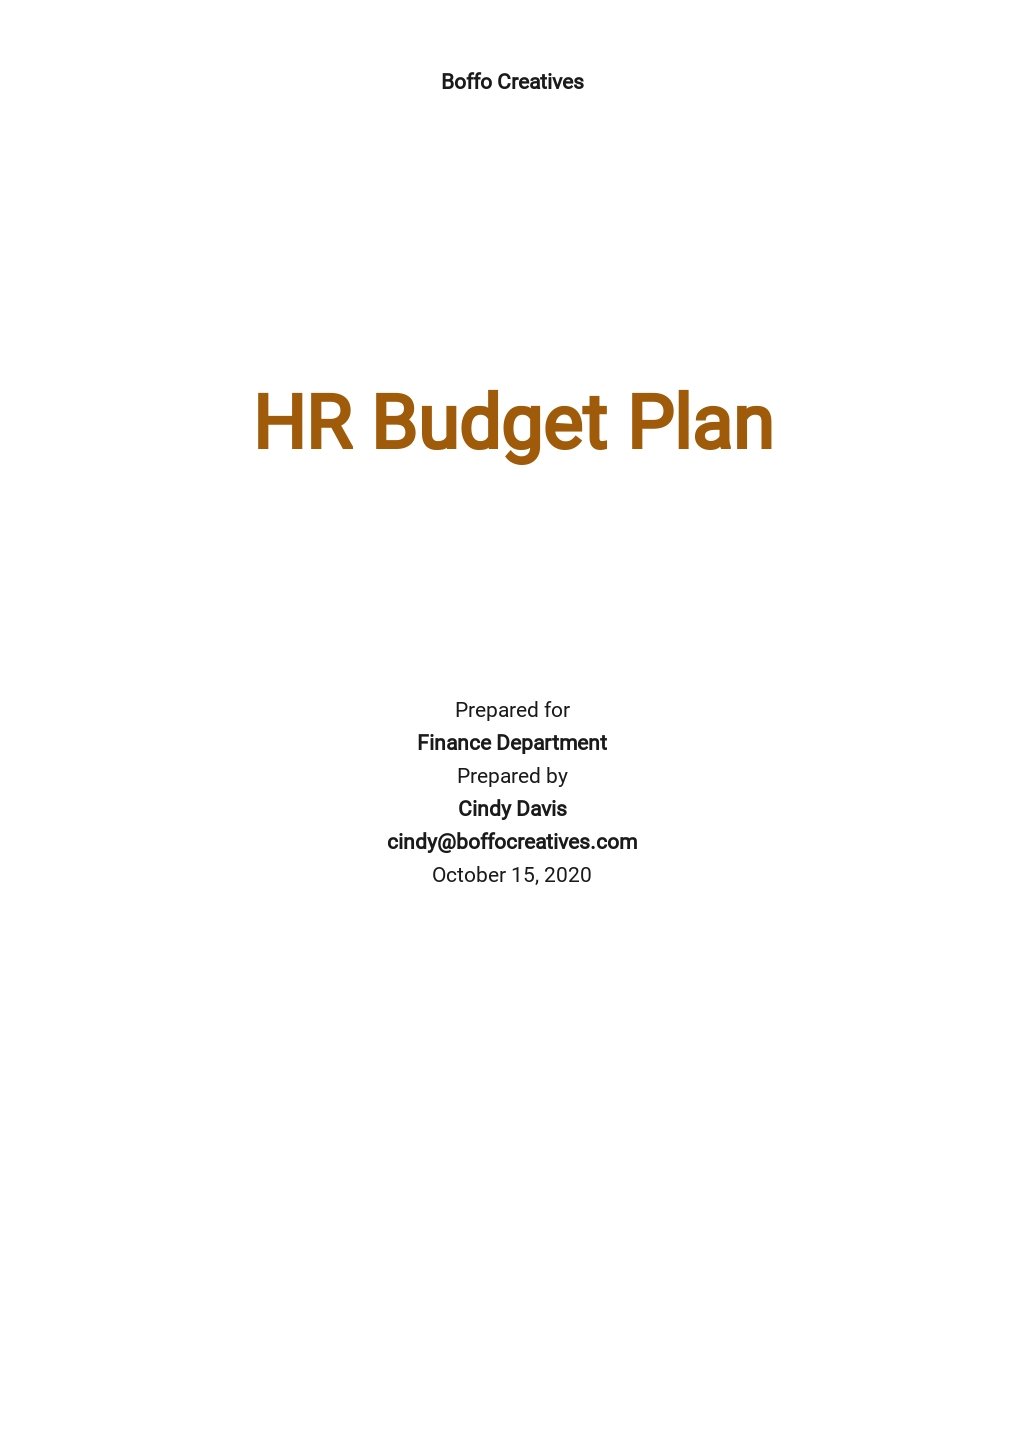 HR Budget Plan Template.jpe